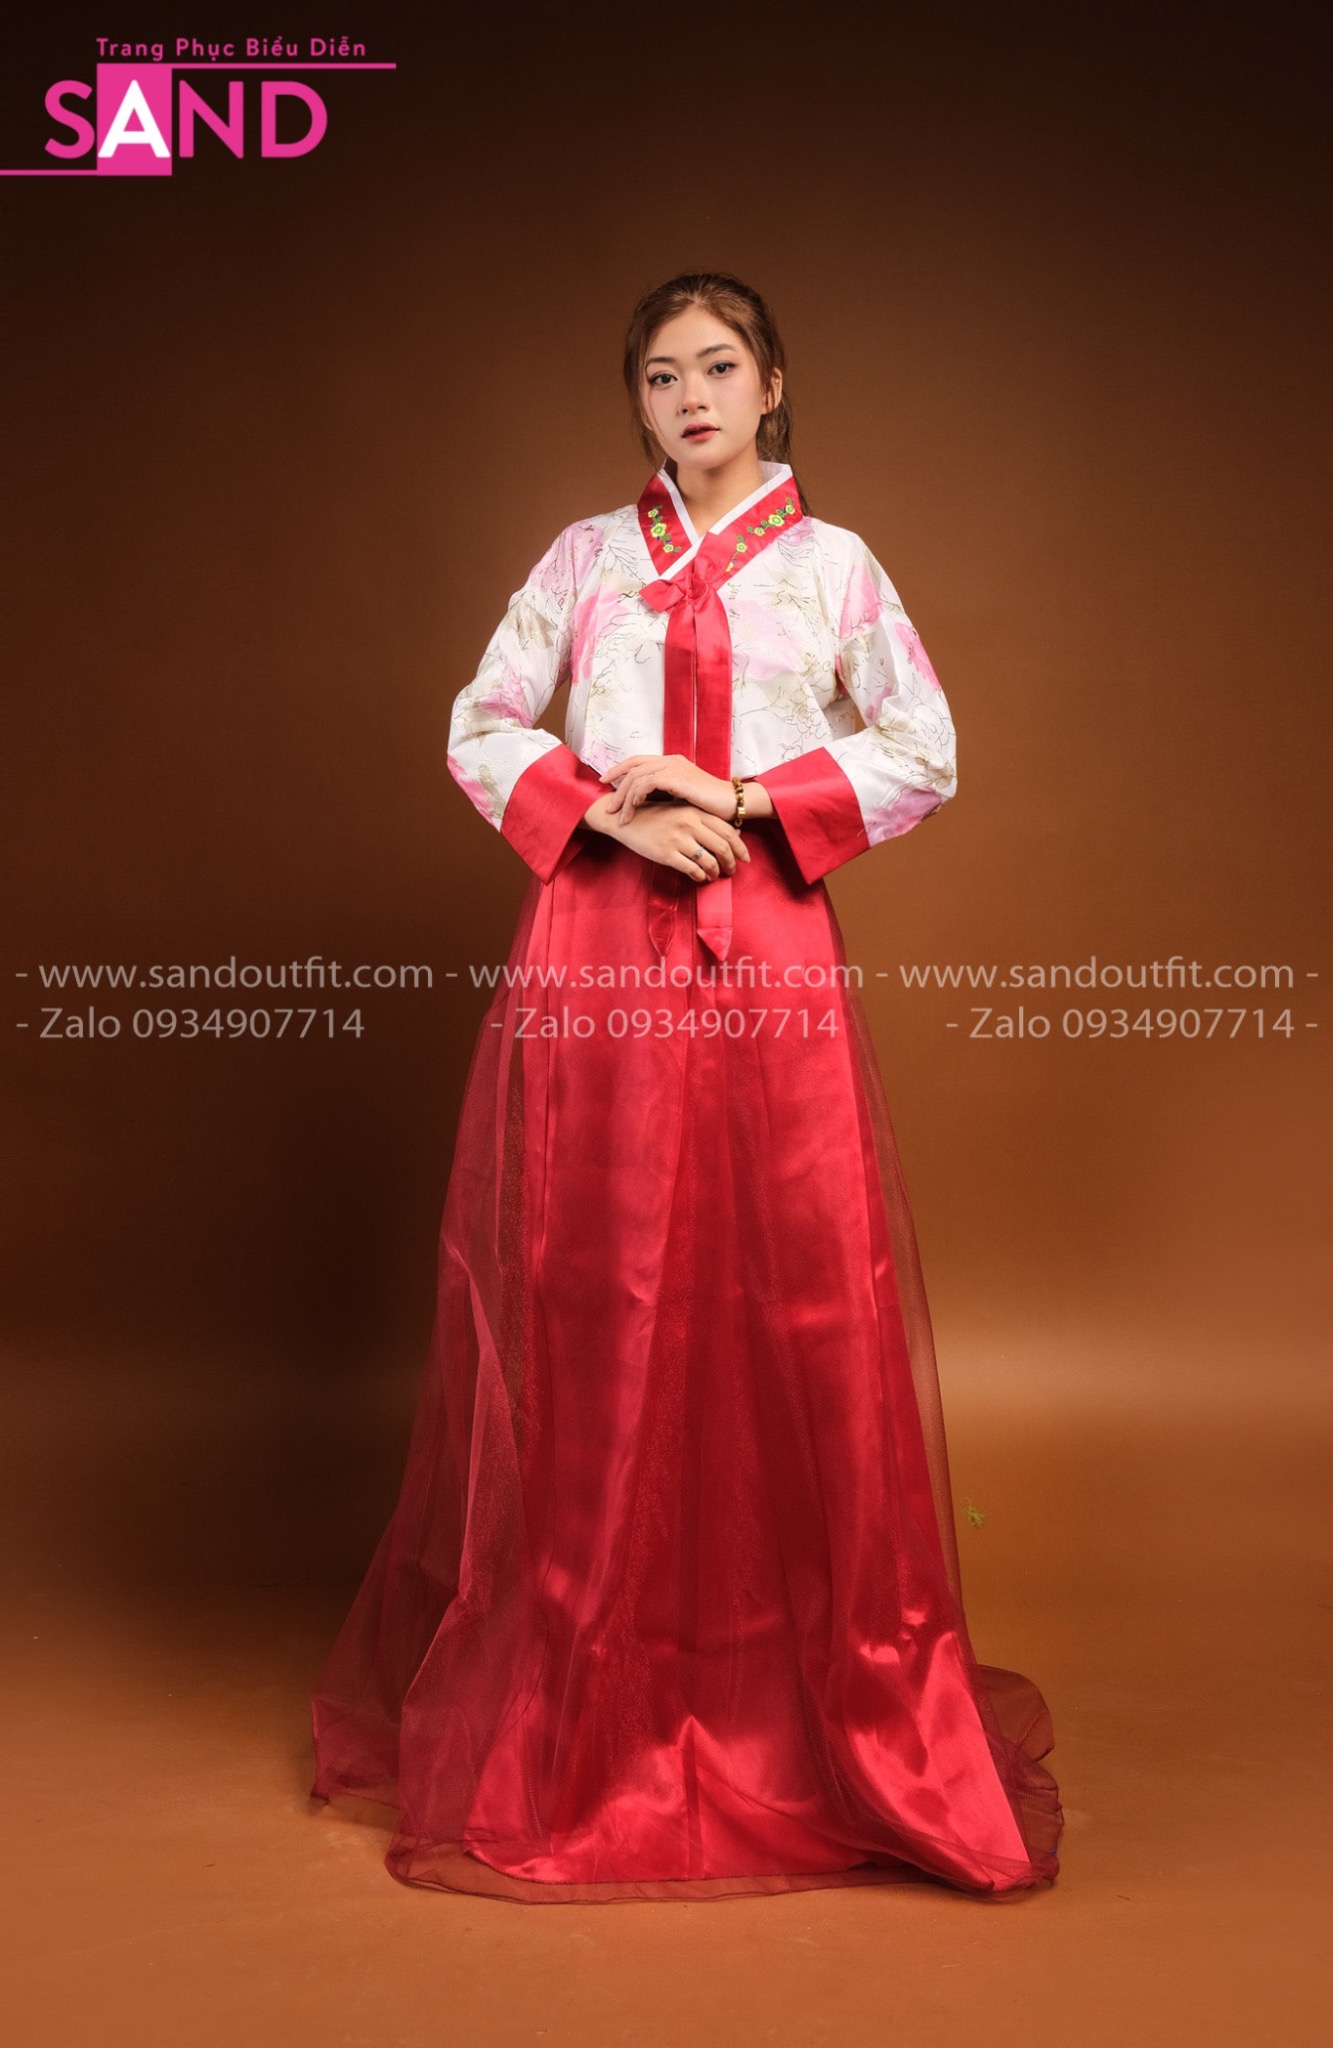 Ồn ào câu chuyện trang phục truyền thống của Hàn Quốc